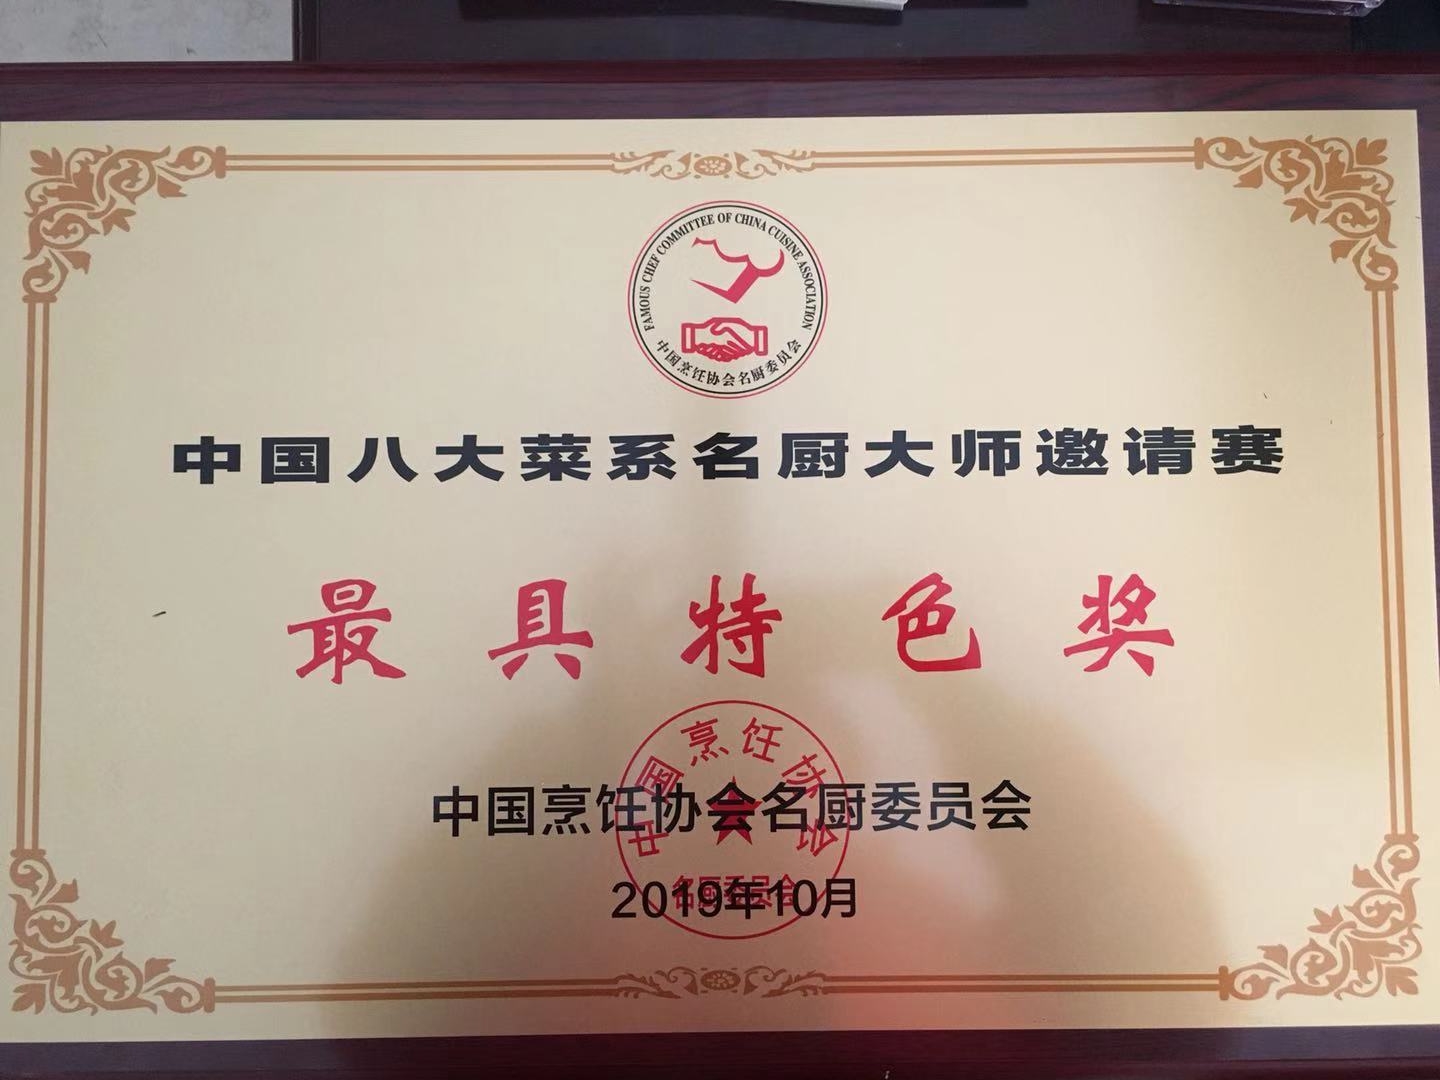 心心相印系列、鱼籽三明治荣获2019年中国（青岛）火锅食材节金奖产品